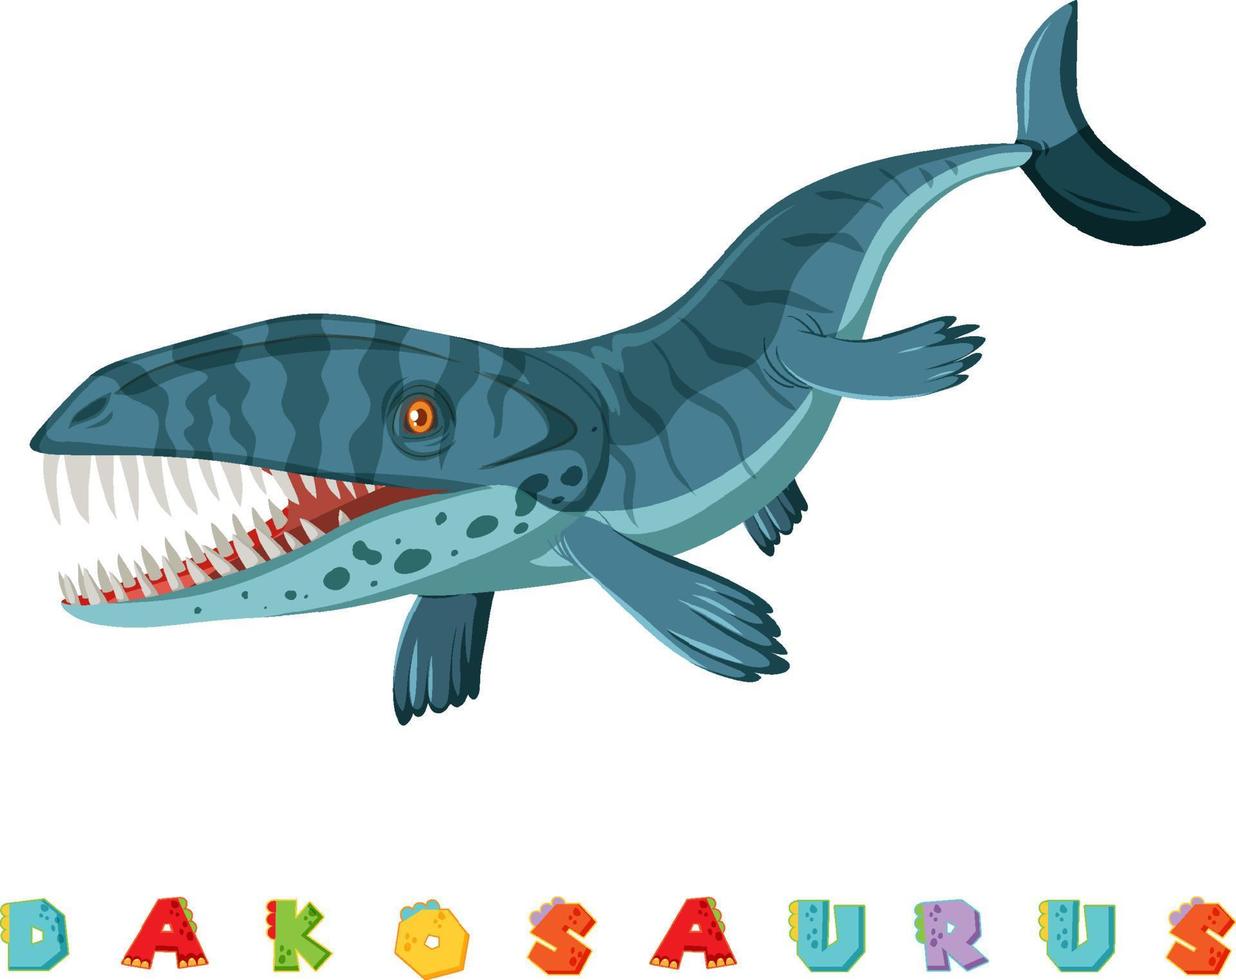 wordcard de dinosaurio para dalpsaurus vector